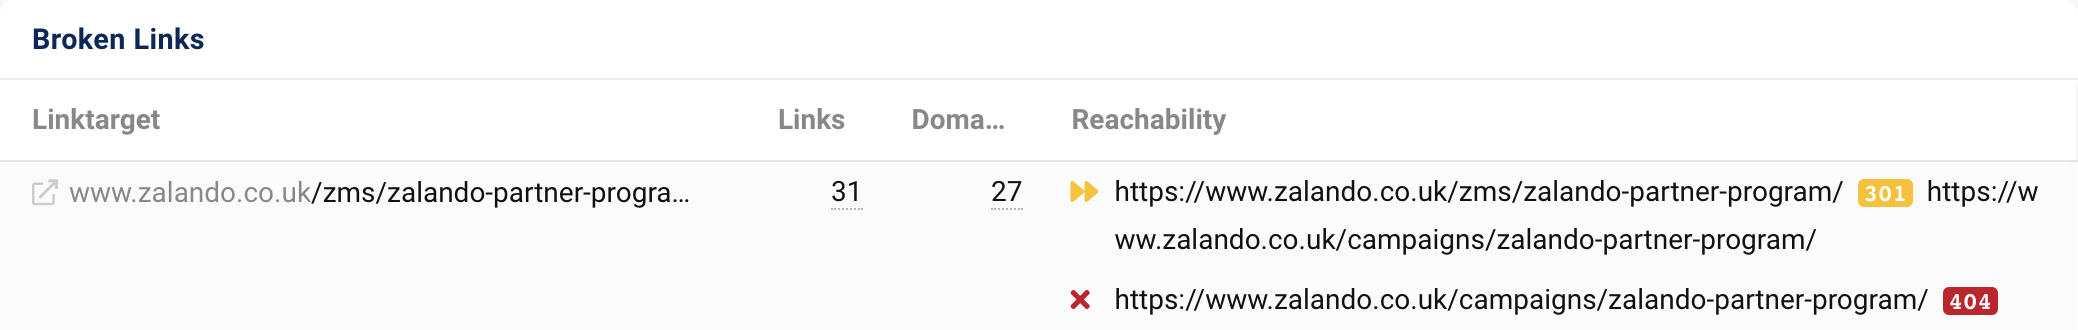 Il target del collegamento zalando.co.uk/zms/zalando-partner-program/ ottiene 31 collegamenti da 27 domini. Dopo un reindirizzamento 301, l'URL restituisce un codice di stato 404.